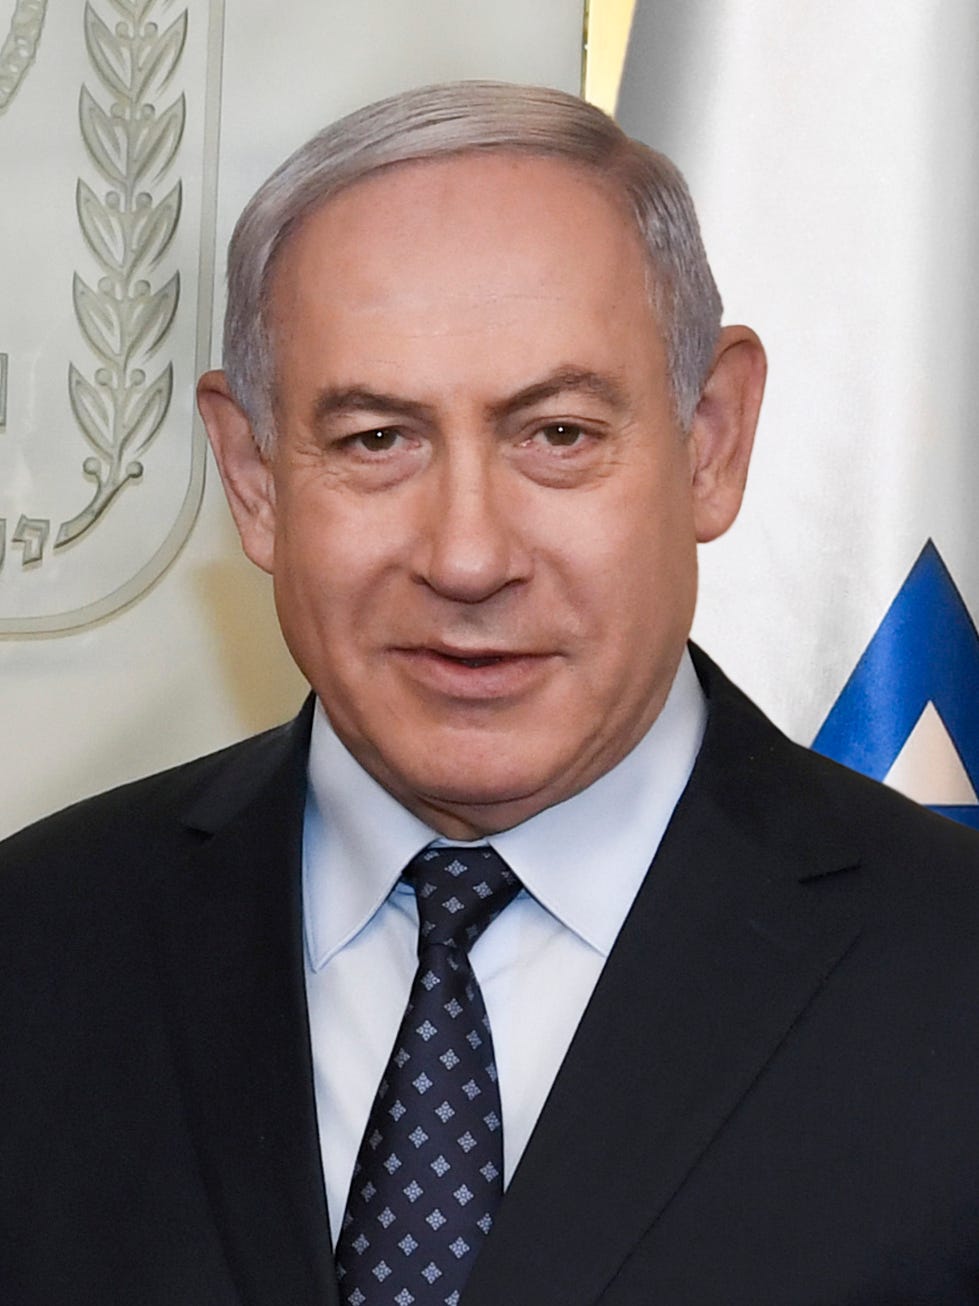 Benjamin “Bibi” Netanyahu